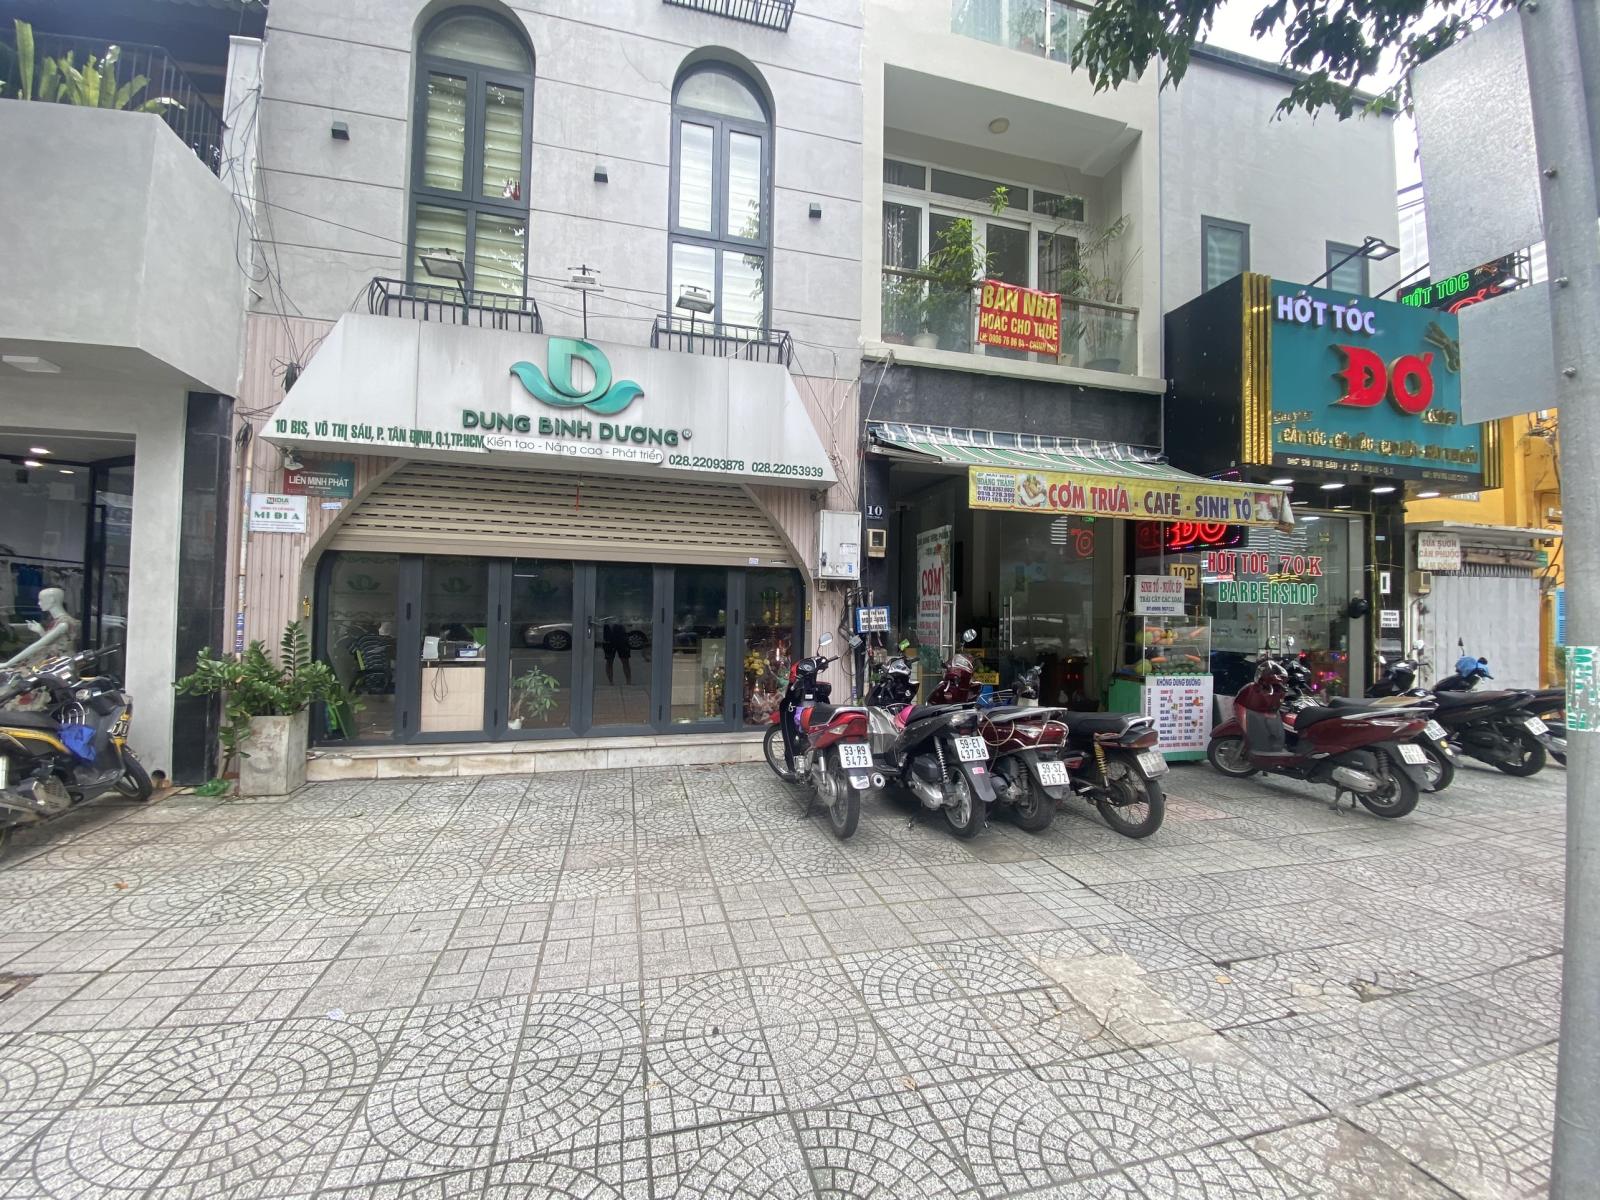 BÁN NHÀ MẶT TIỀN Đường Võ Thị Sáu, P. Tân Định, Quận 1.LHCC:0919 79 9090